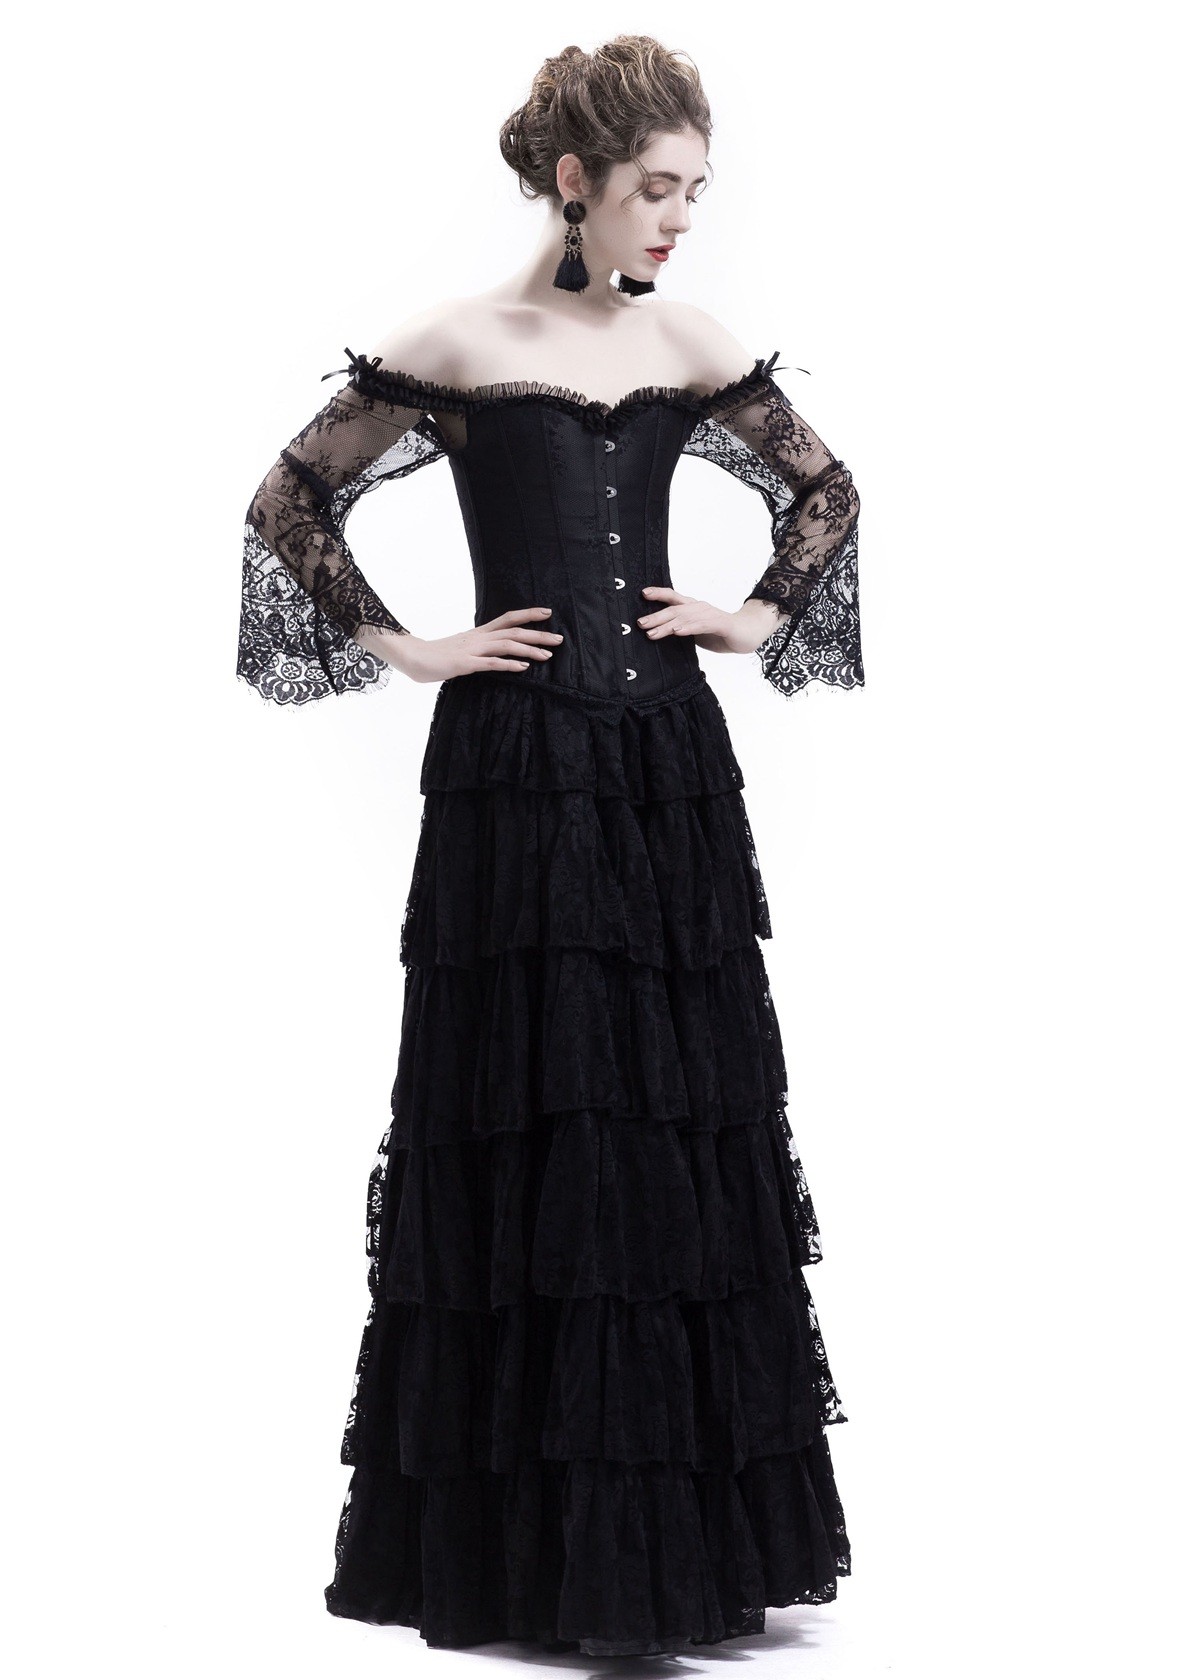 Black Lace Romantic Gothic Corset Long Prom Dress D1043 - D